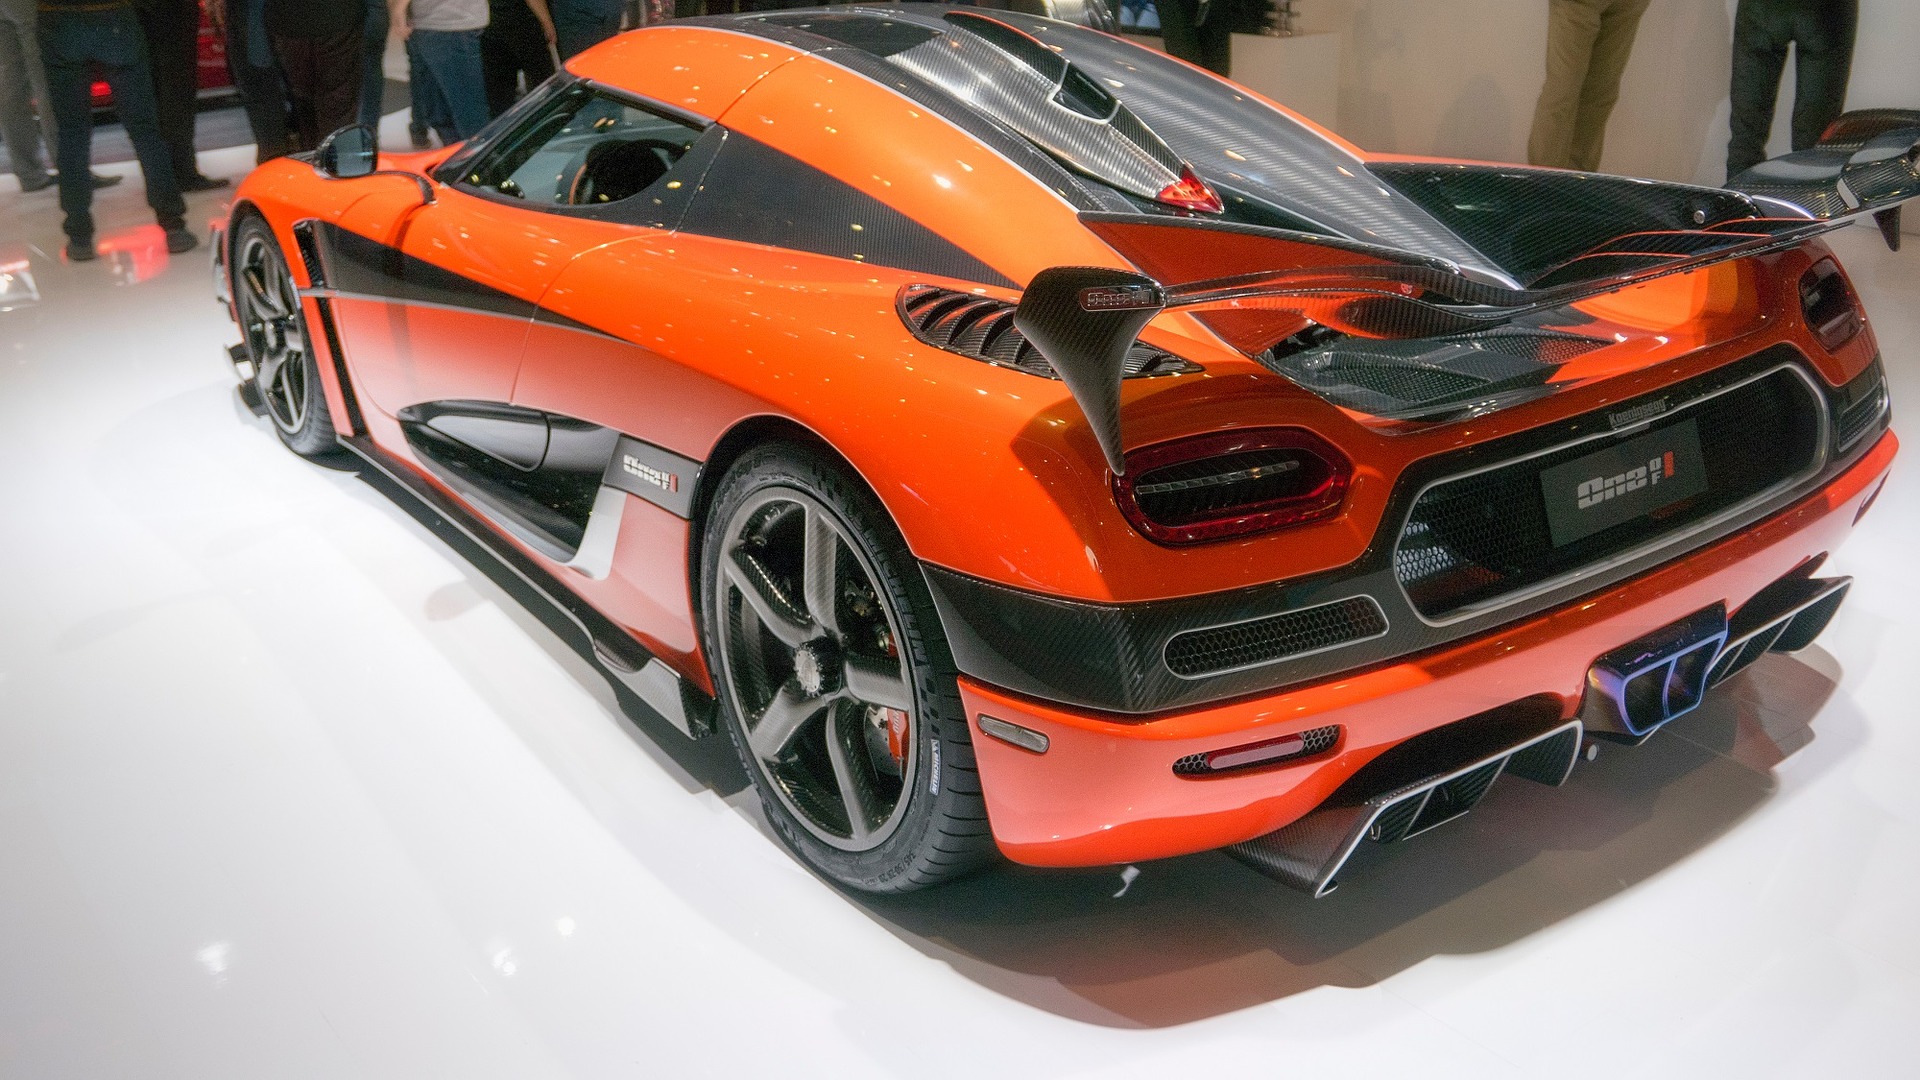 Carbon fiber sports car